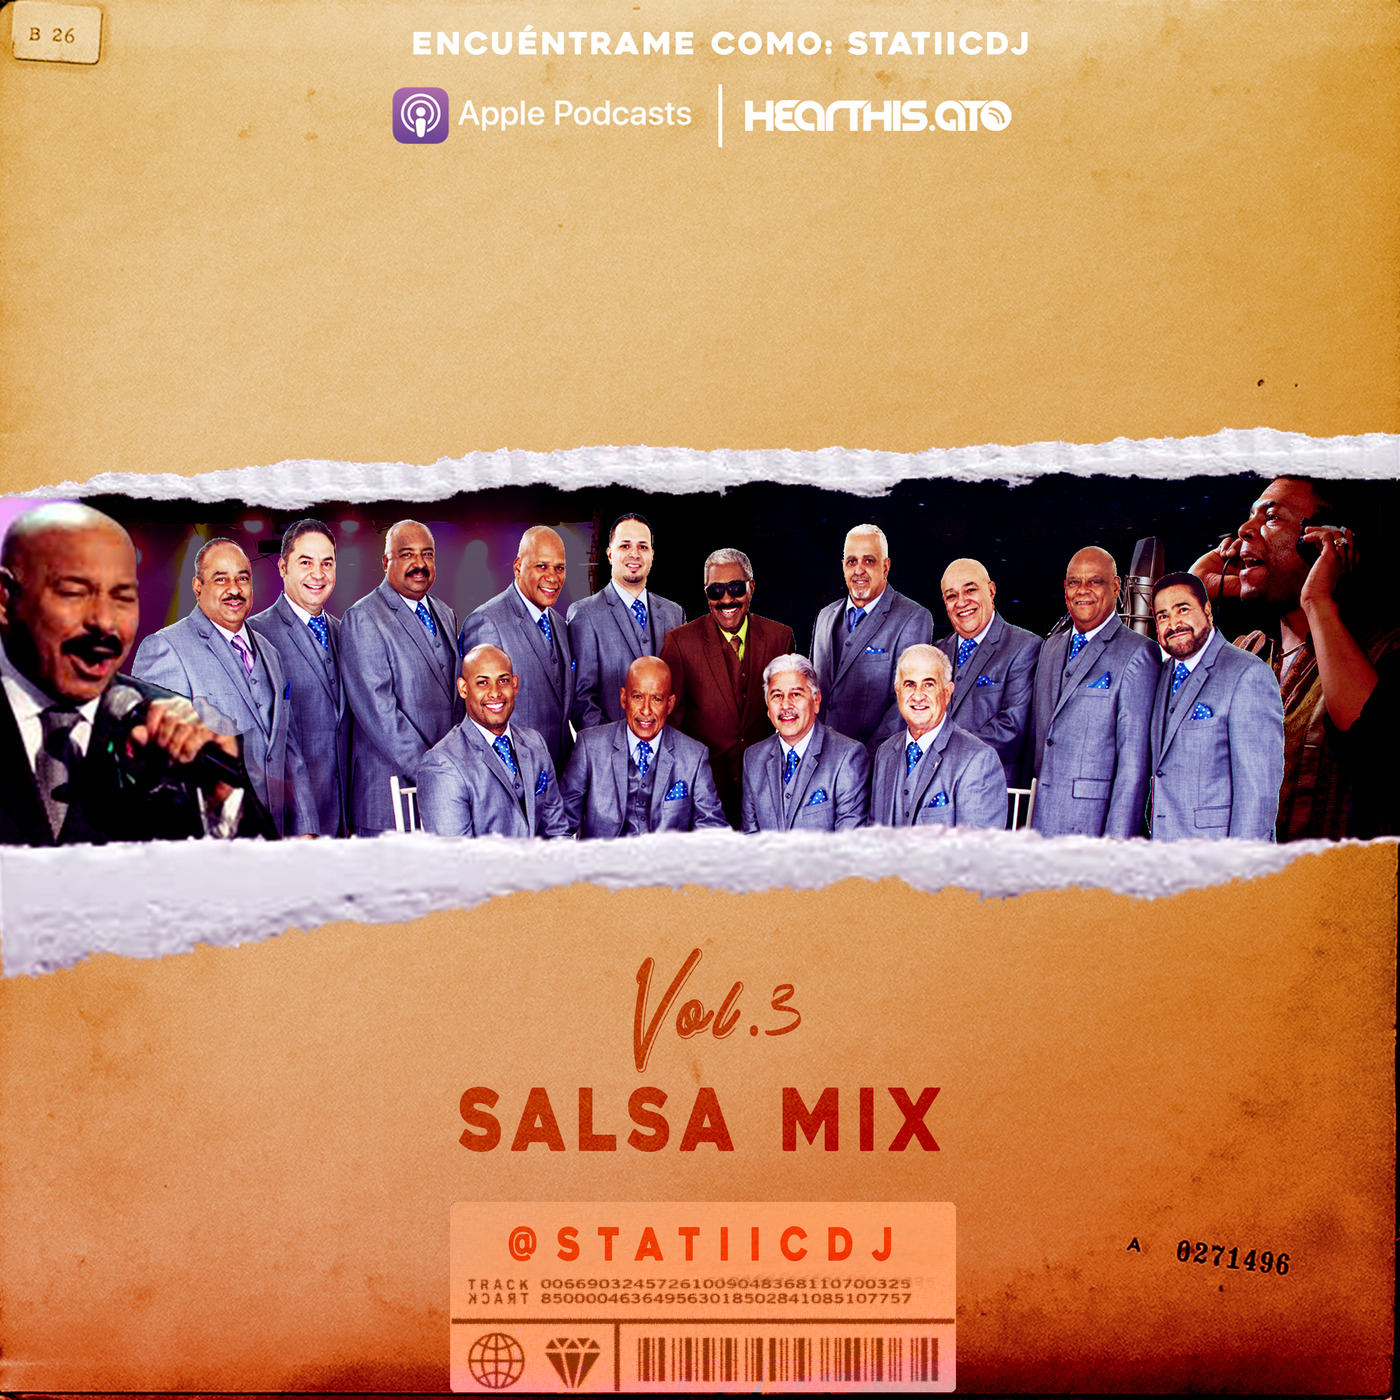 @statiicdj - Salsa mix vol.3